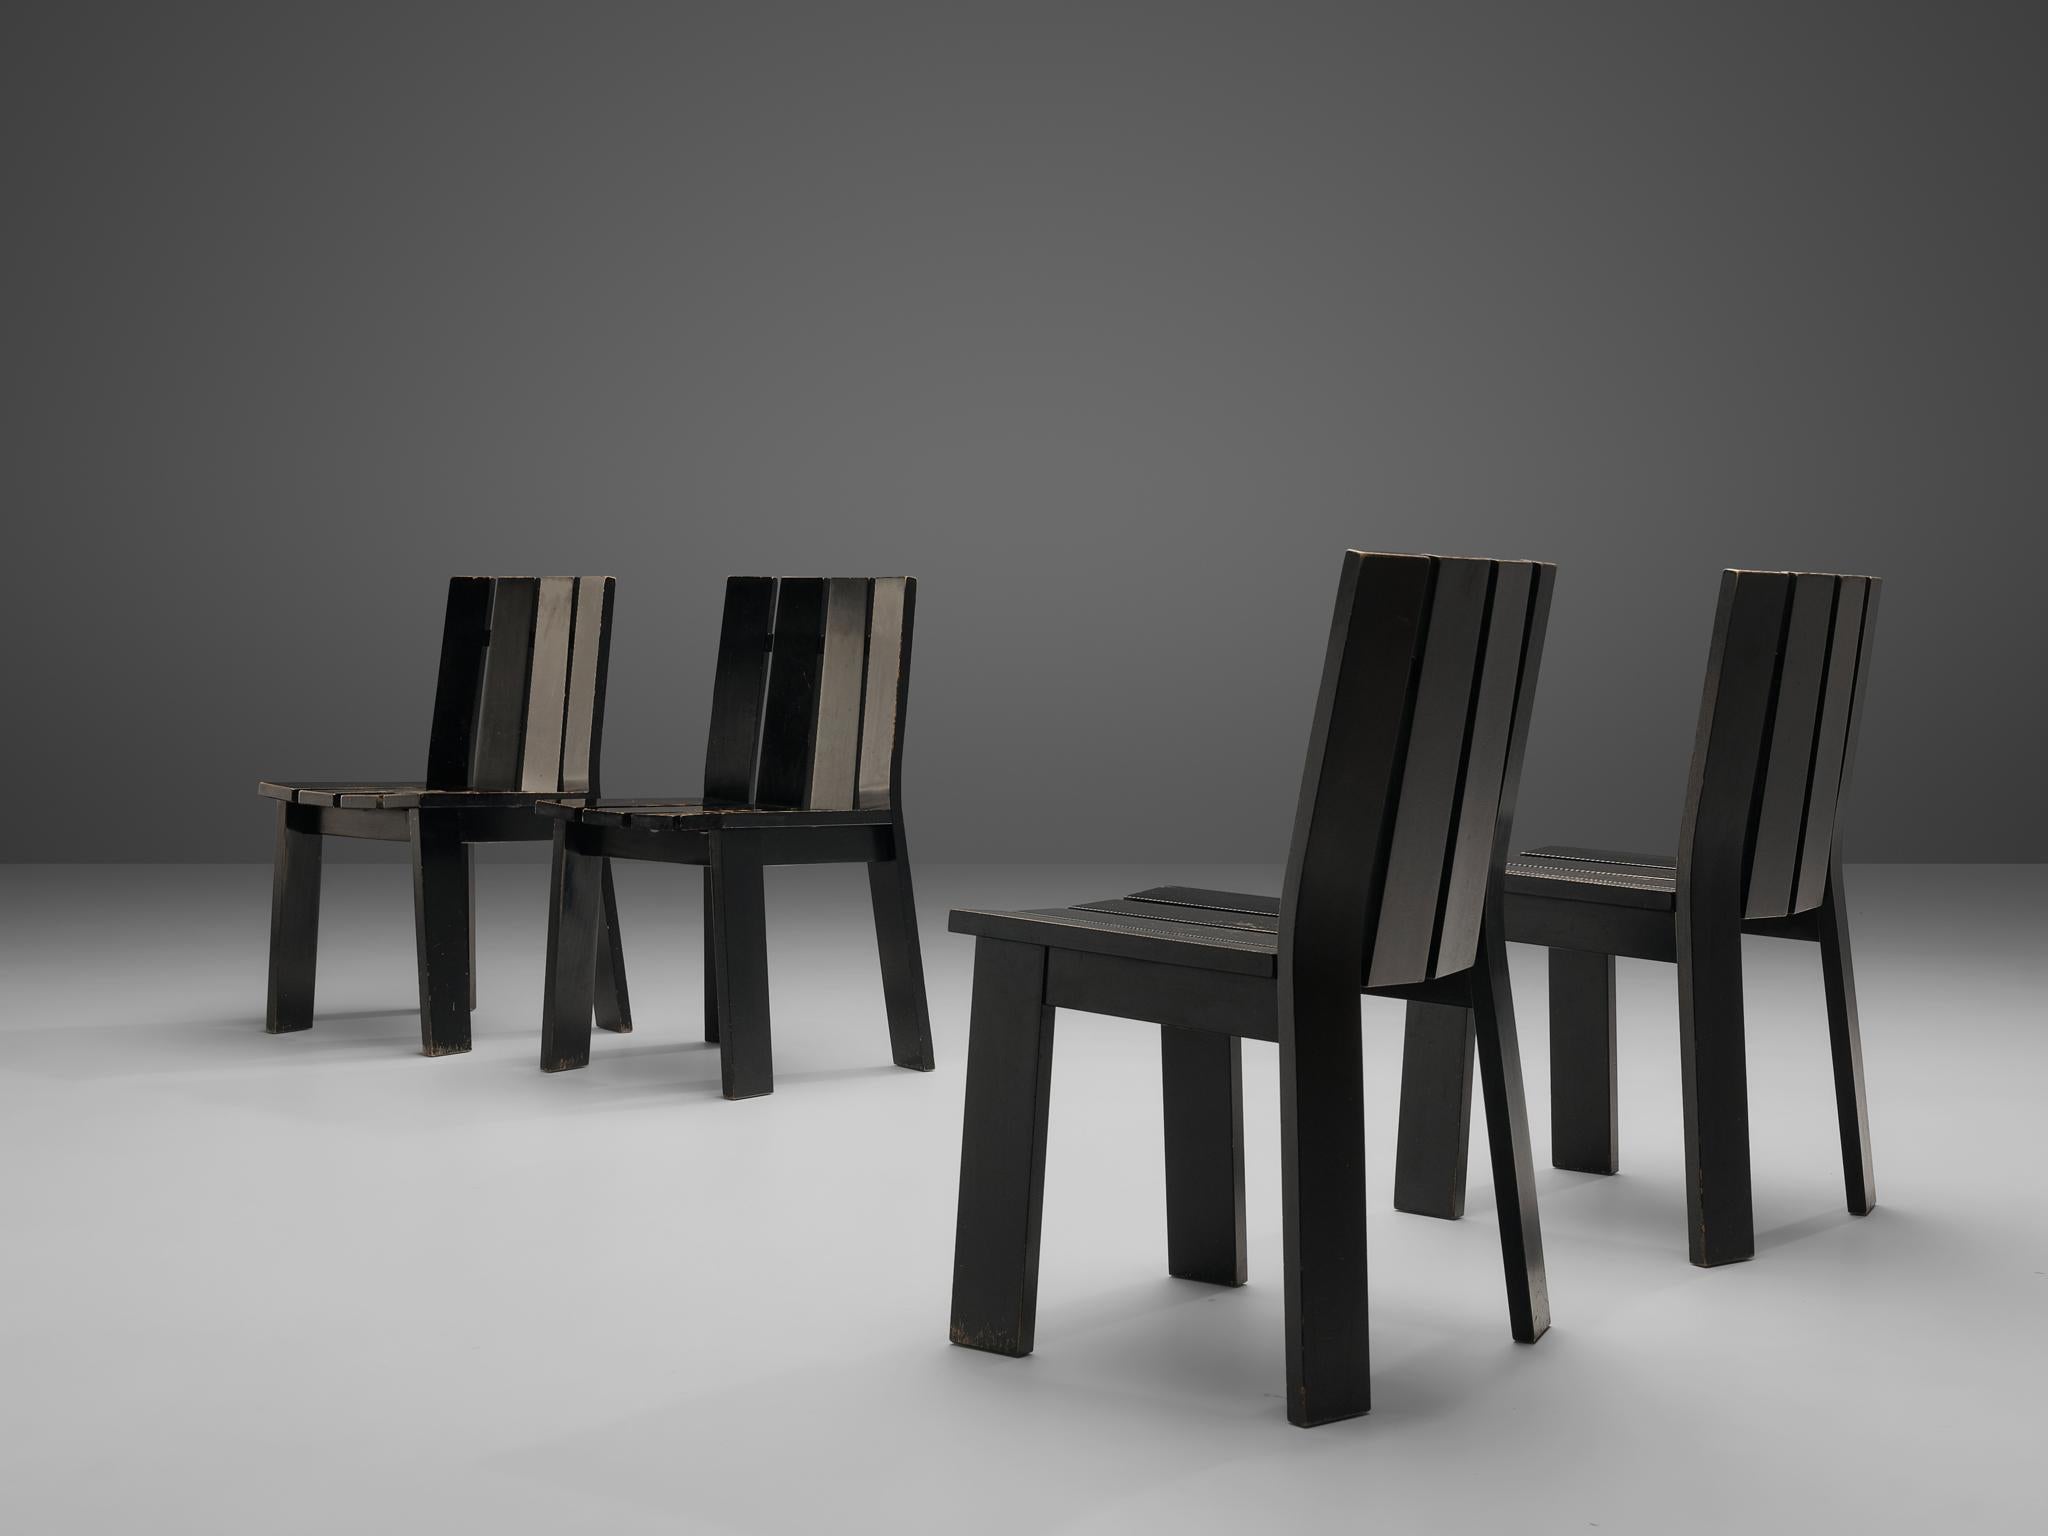 Satz von vier Esszimmerstühlen, schwarz lackiertes Holz, Niederlande, 1970er Jahre

Ein robustes Set von Esszimmerstühlen, das ganz aus Holzbrettern gefertigt ist und an das Design von Gerrit Rietveld erinnert. Das Design, das sich durch seine